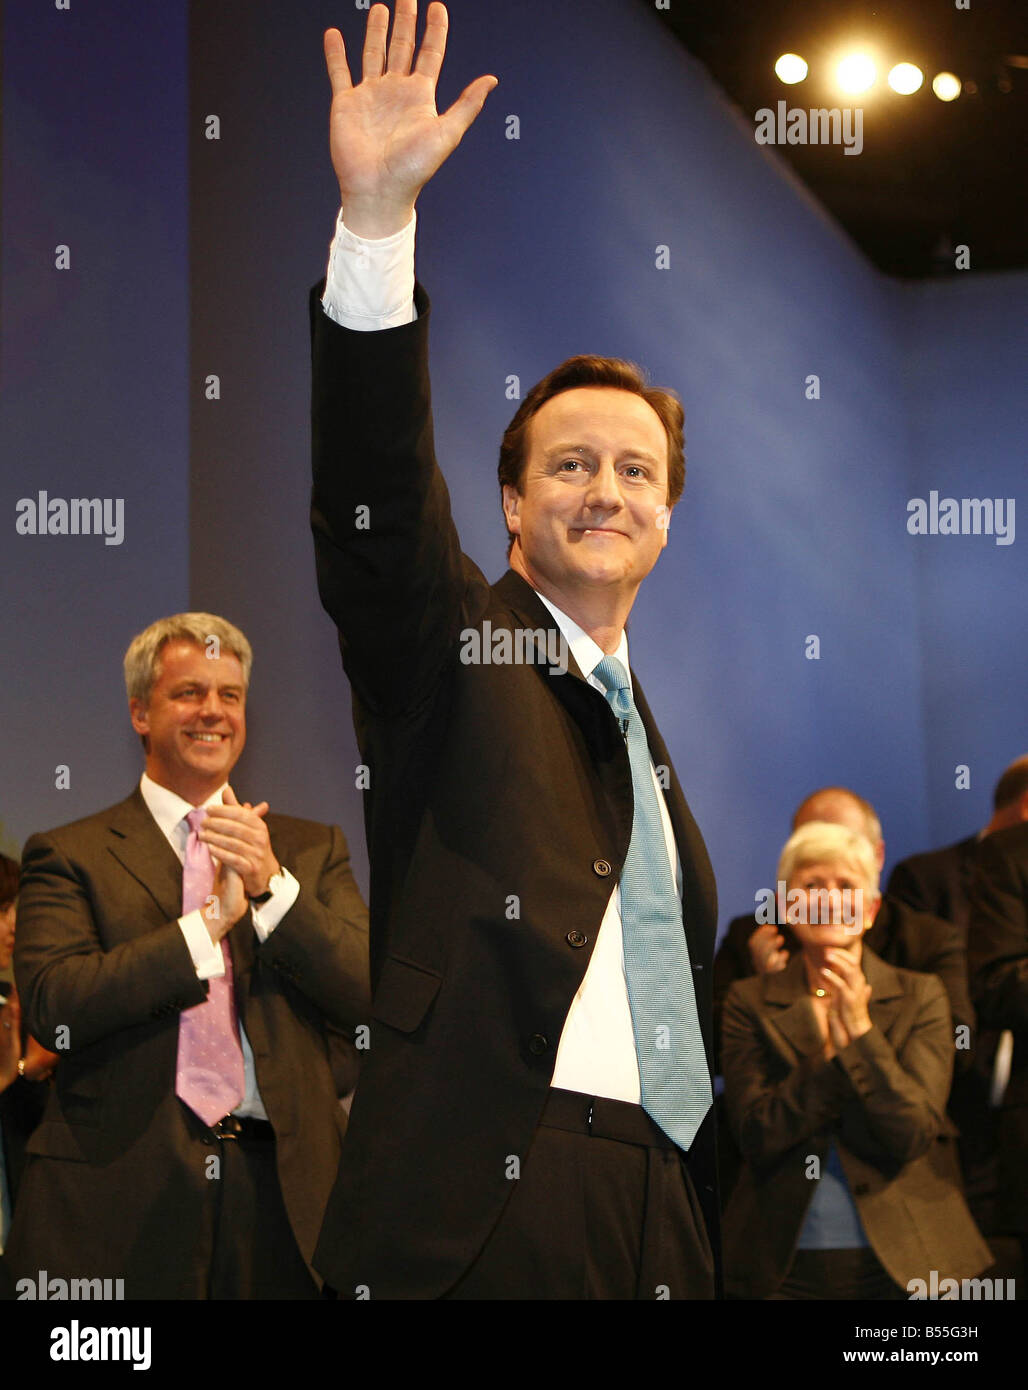 Il leader dei conservatori David Cameron prende gli applausi dei delegati dopo il suo intervento al 2007 Congresso del Partito Conservatore di Blackpool Foto Stock